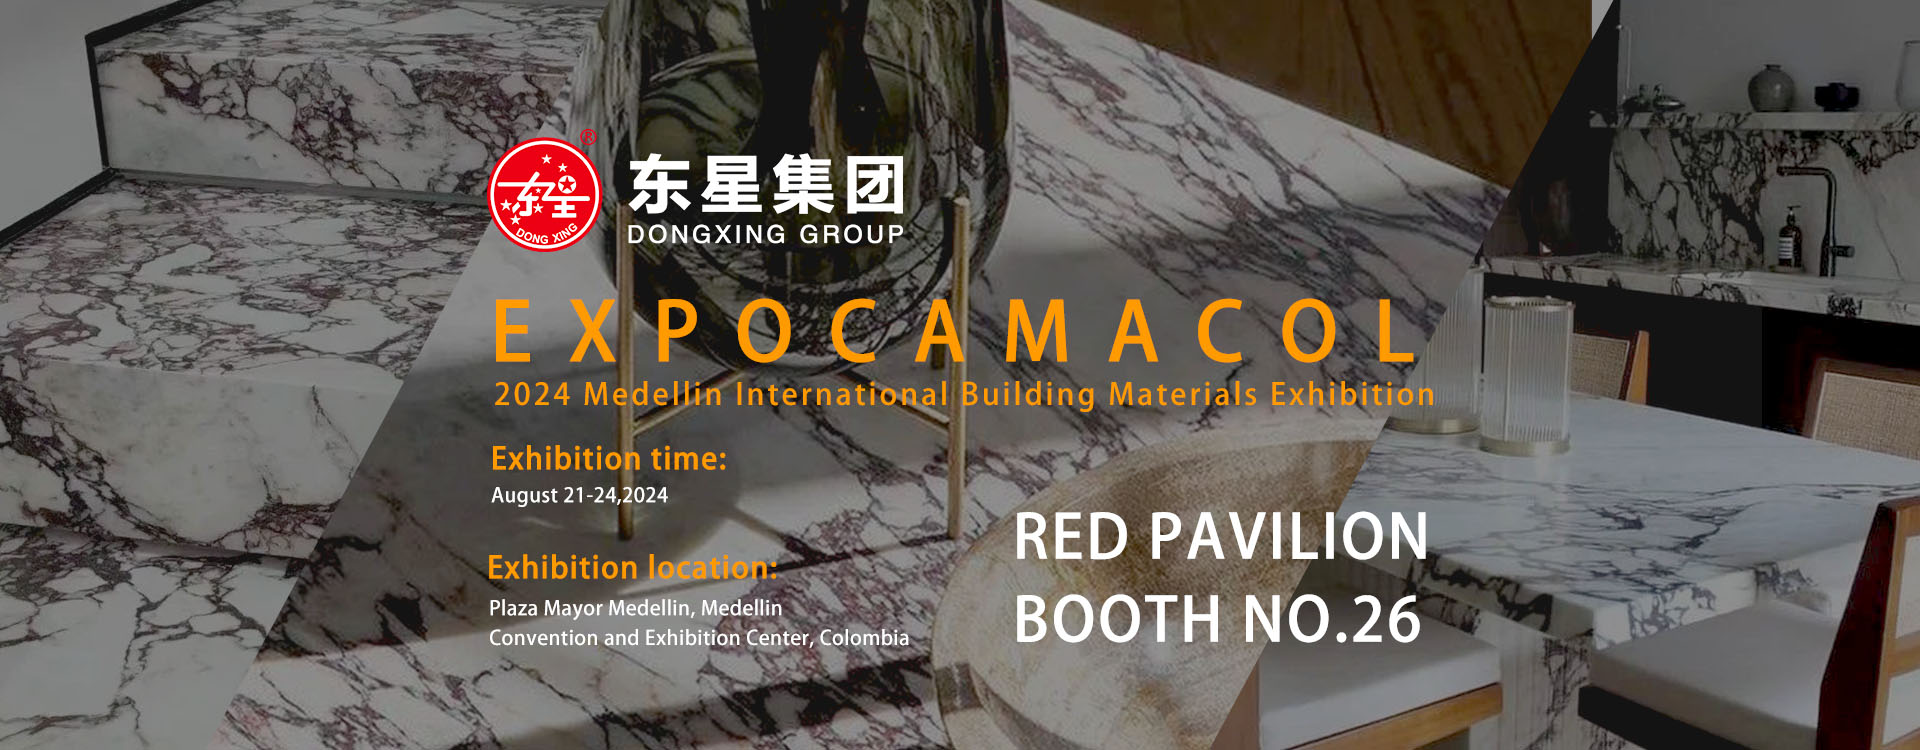 Dongxing Group neemt deel aan EXPOCAMACOL 2024